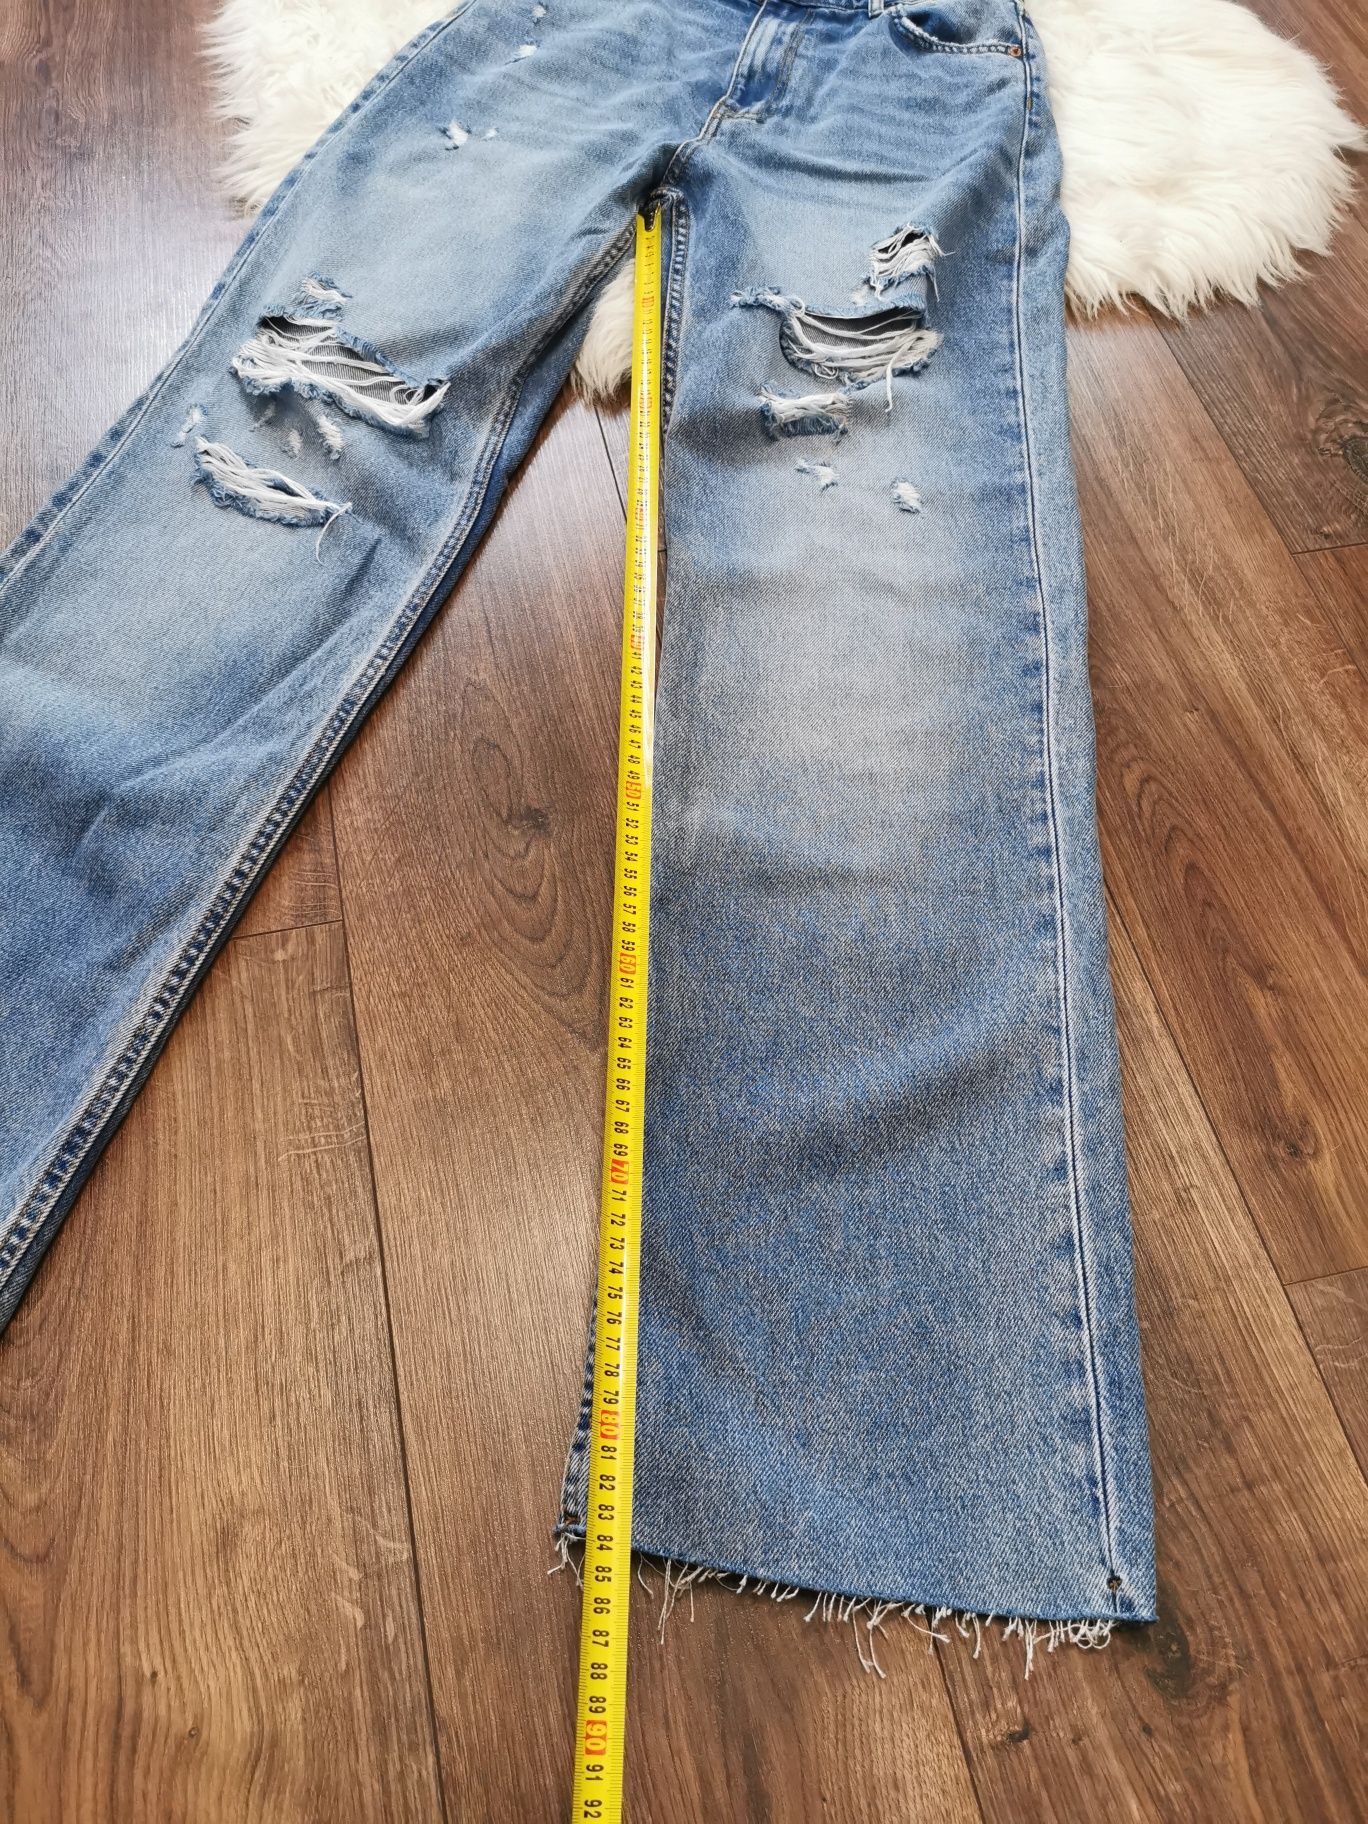 Spodnie dżinsowe jeansowe dżinsy jeansy z dziurami Zara L 40 proste